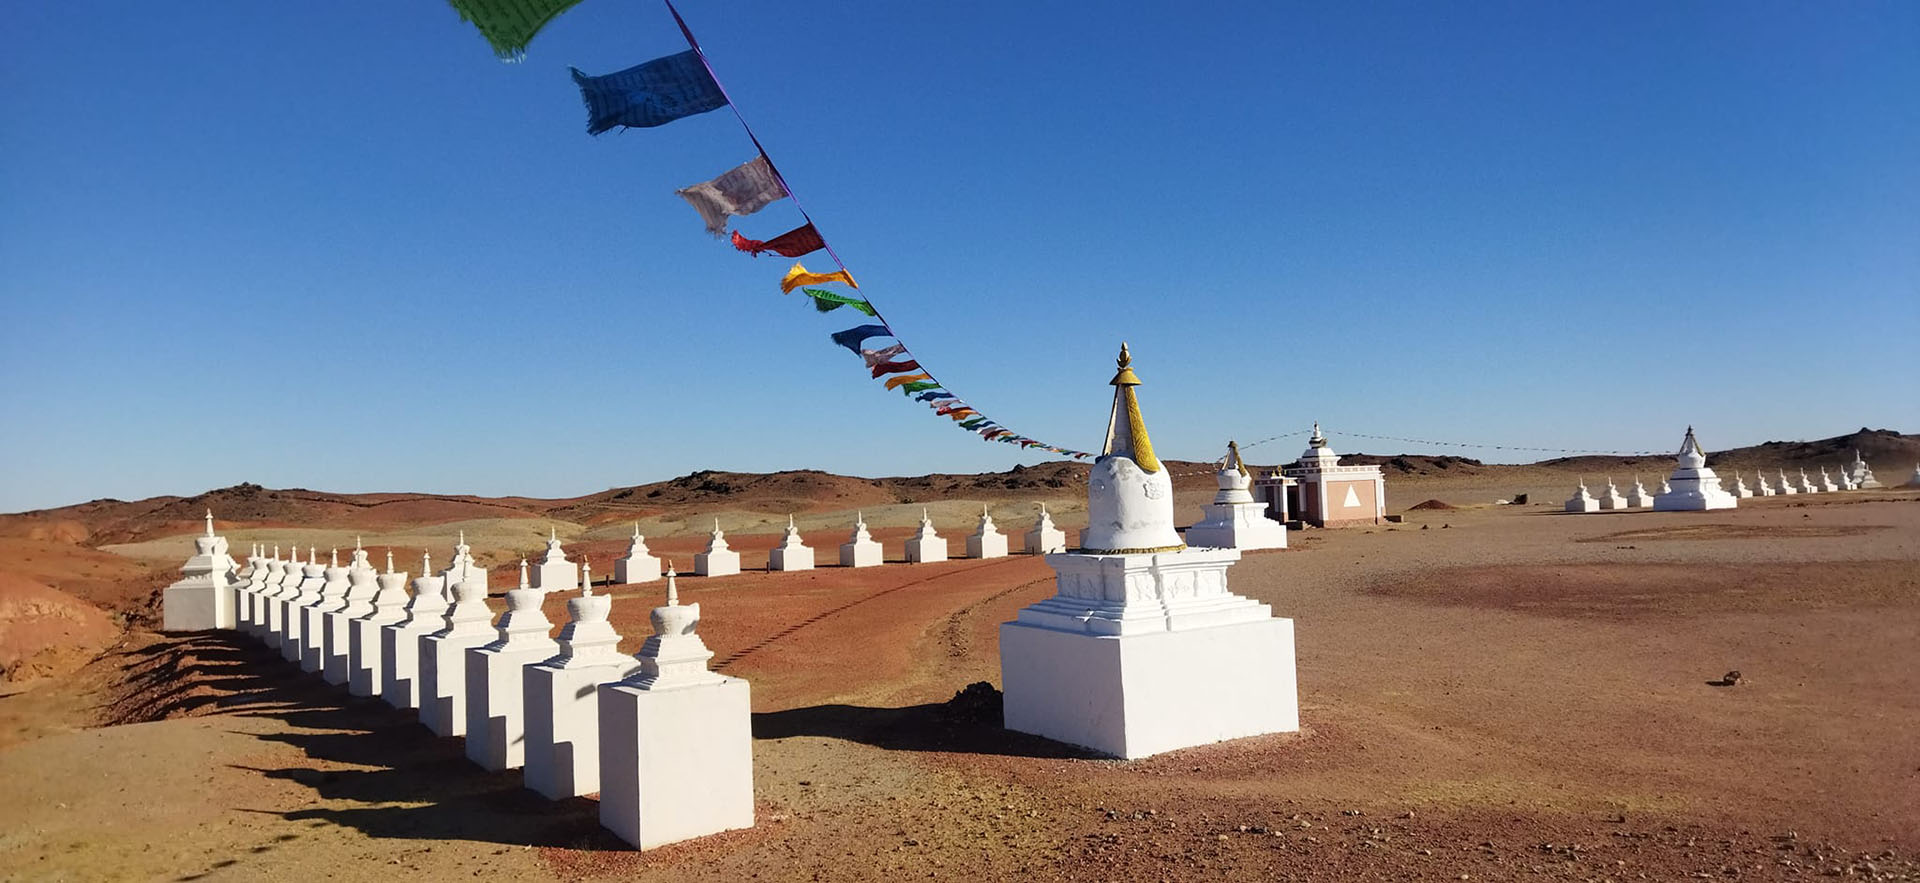 Monasterio de Khammar kid, en Gobi, Mongolia